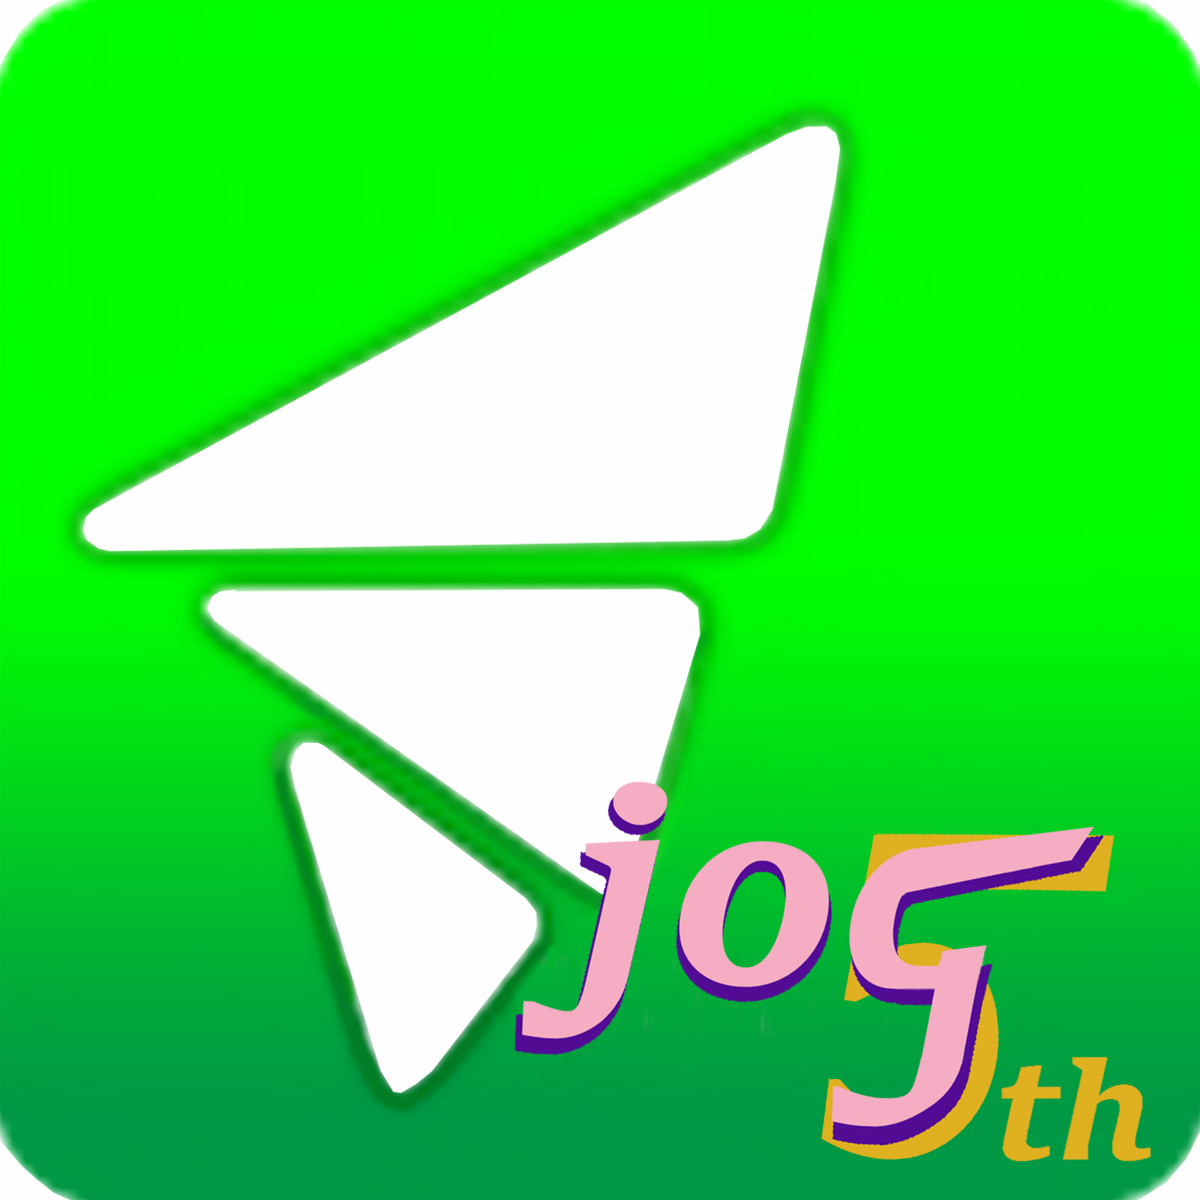 Attachment JOG 5th icon.jpg